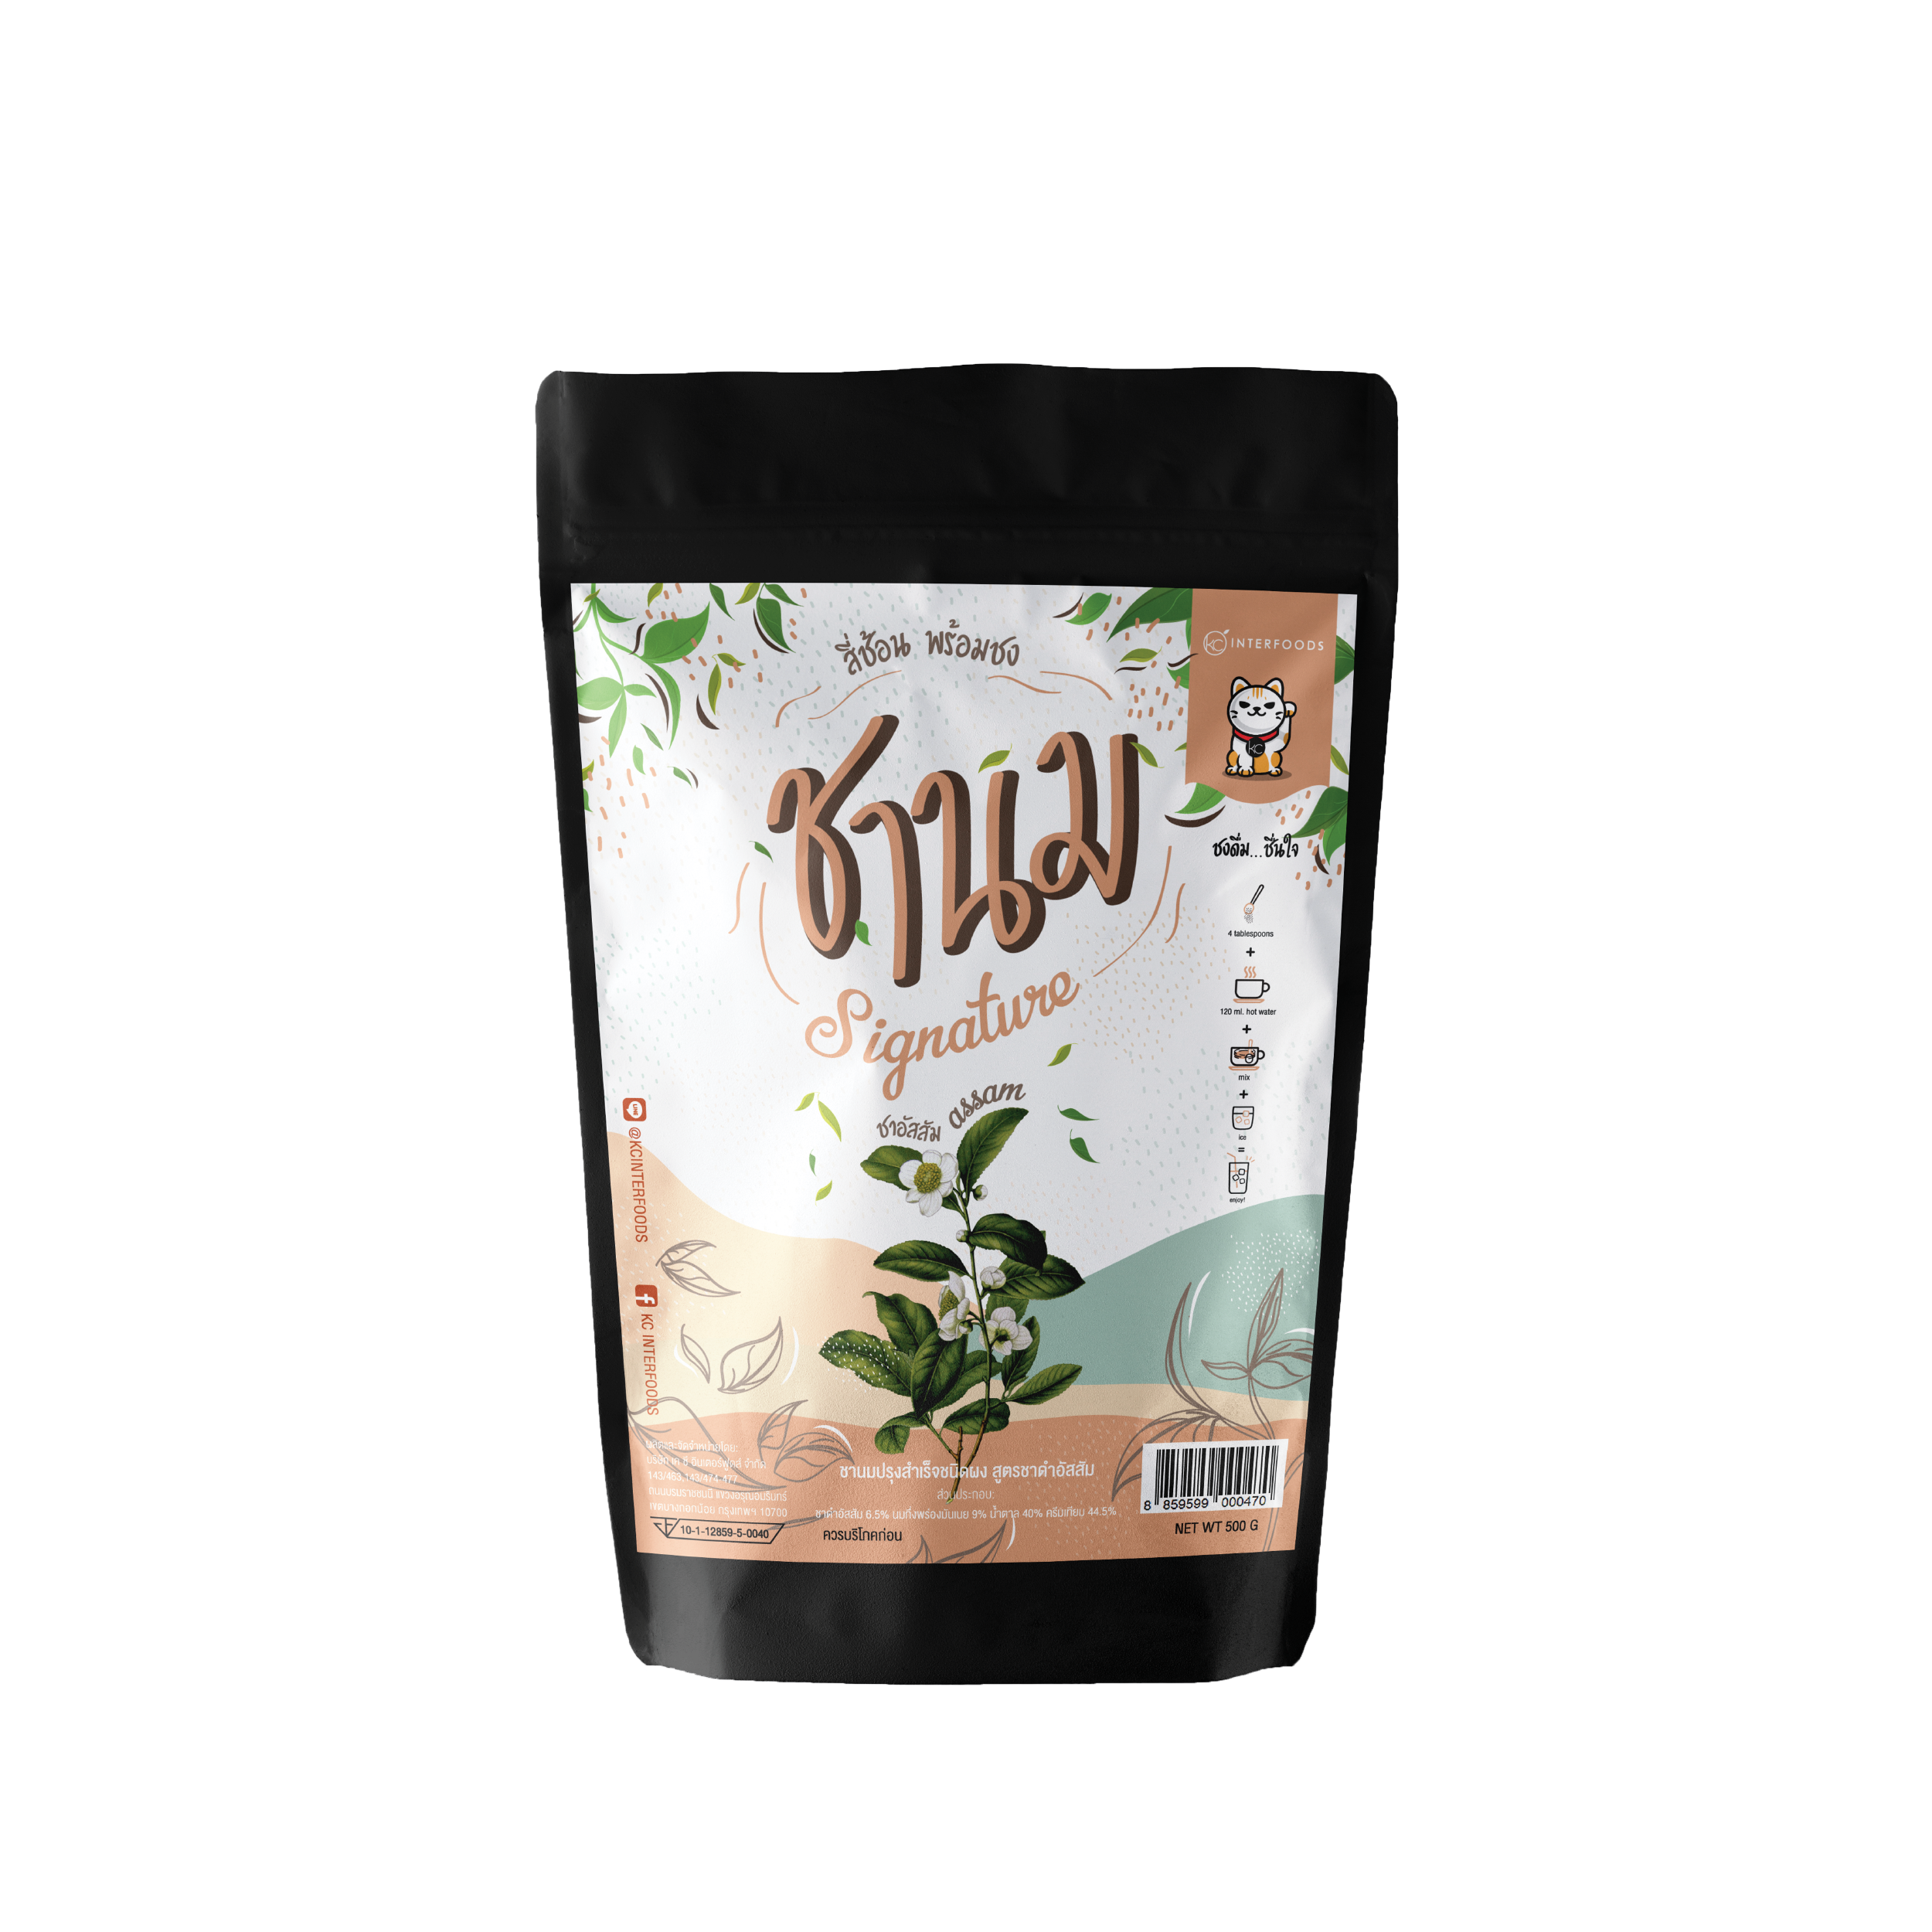 ผงชานม สูตรชาอัสสัมพร้อมชง 500 กรัม (Instant Assam Milk Tea Powder)